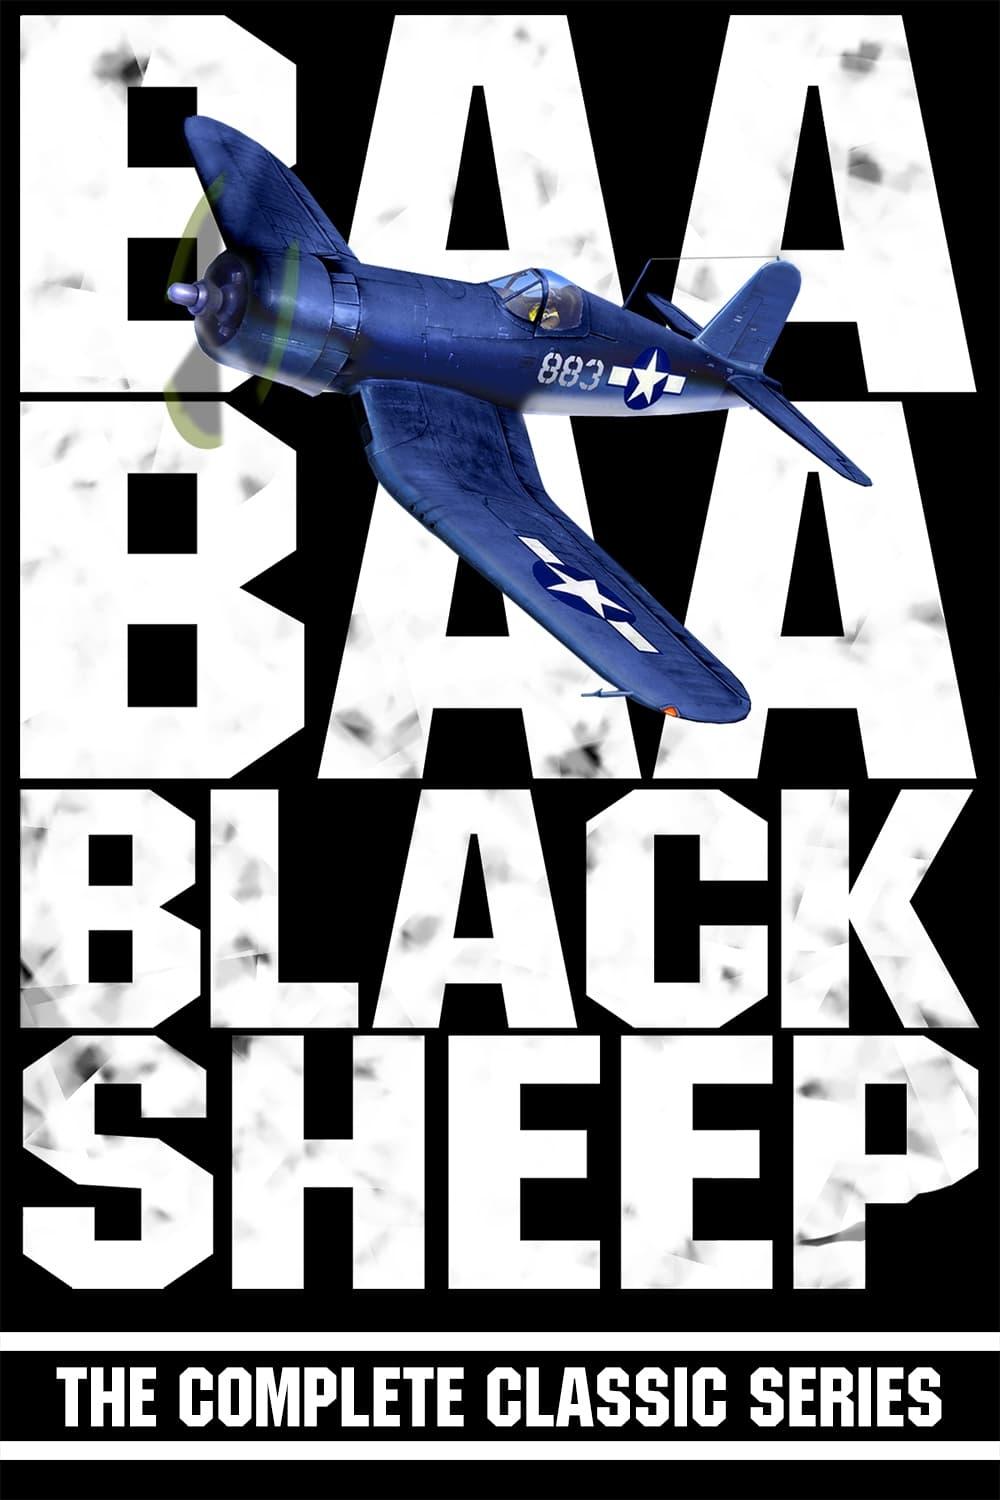 Baa Baa Black Sheep poster